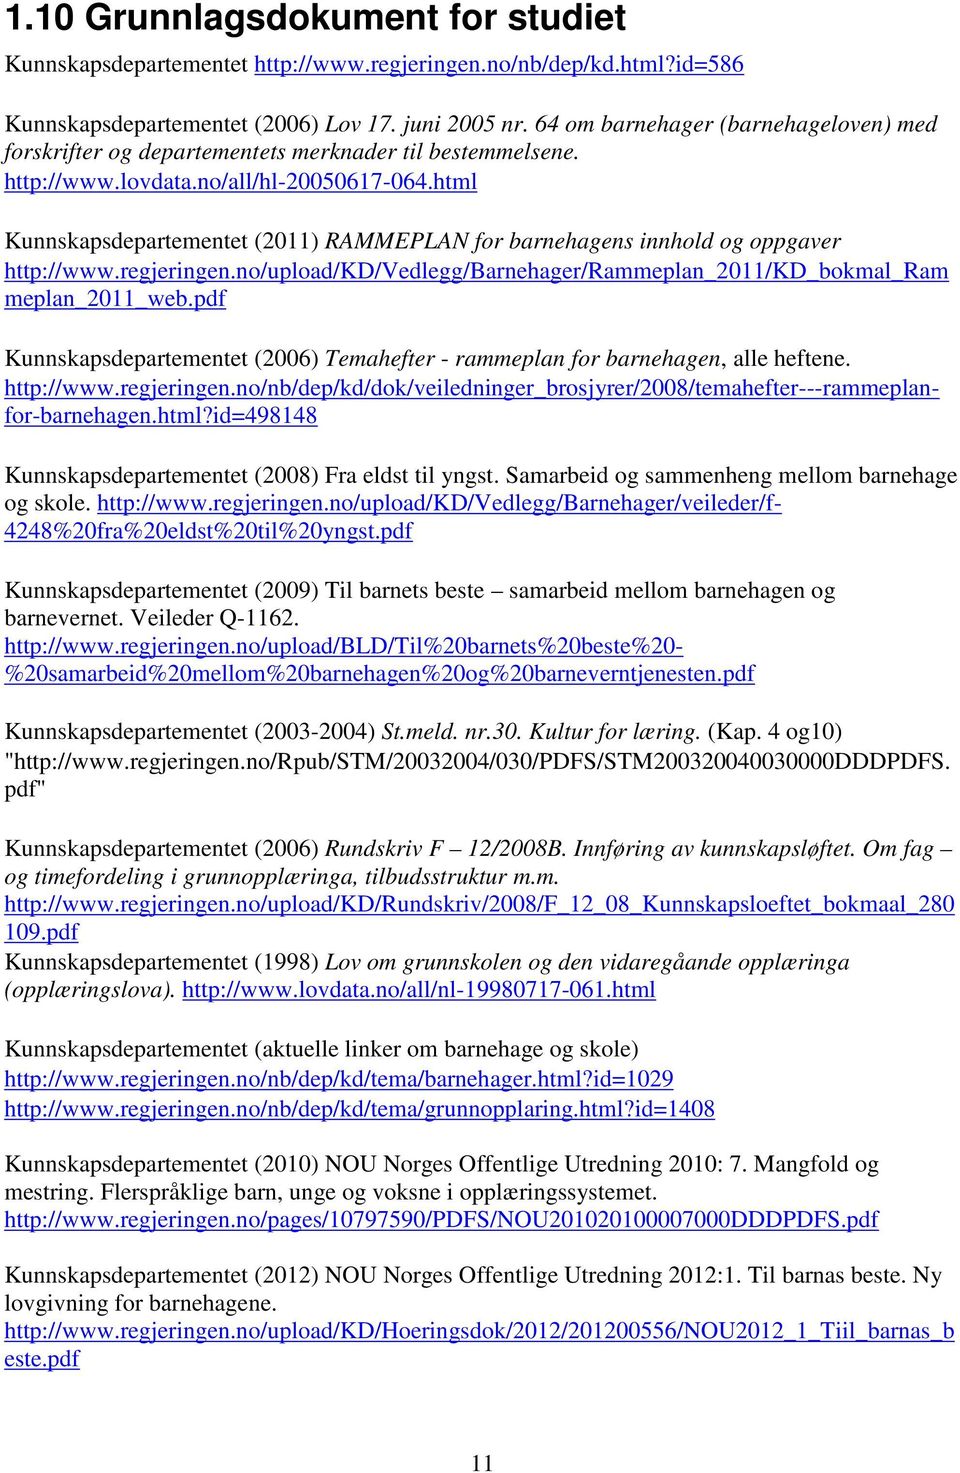 html Kunnskapsdepartementet (2011) RAMMEPLAN for barnehagens innhold og oppgaver http://www.regjeringen.no/upload/kd/vedlegg/barnehager/rammeplan_2011/kd_bokmal_ram meplan_2011_web.